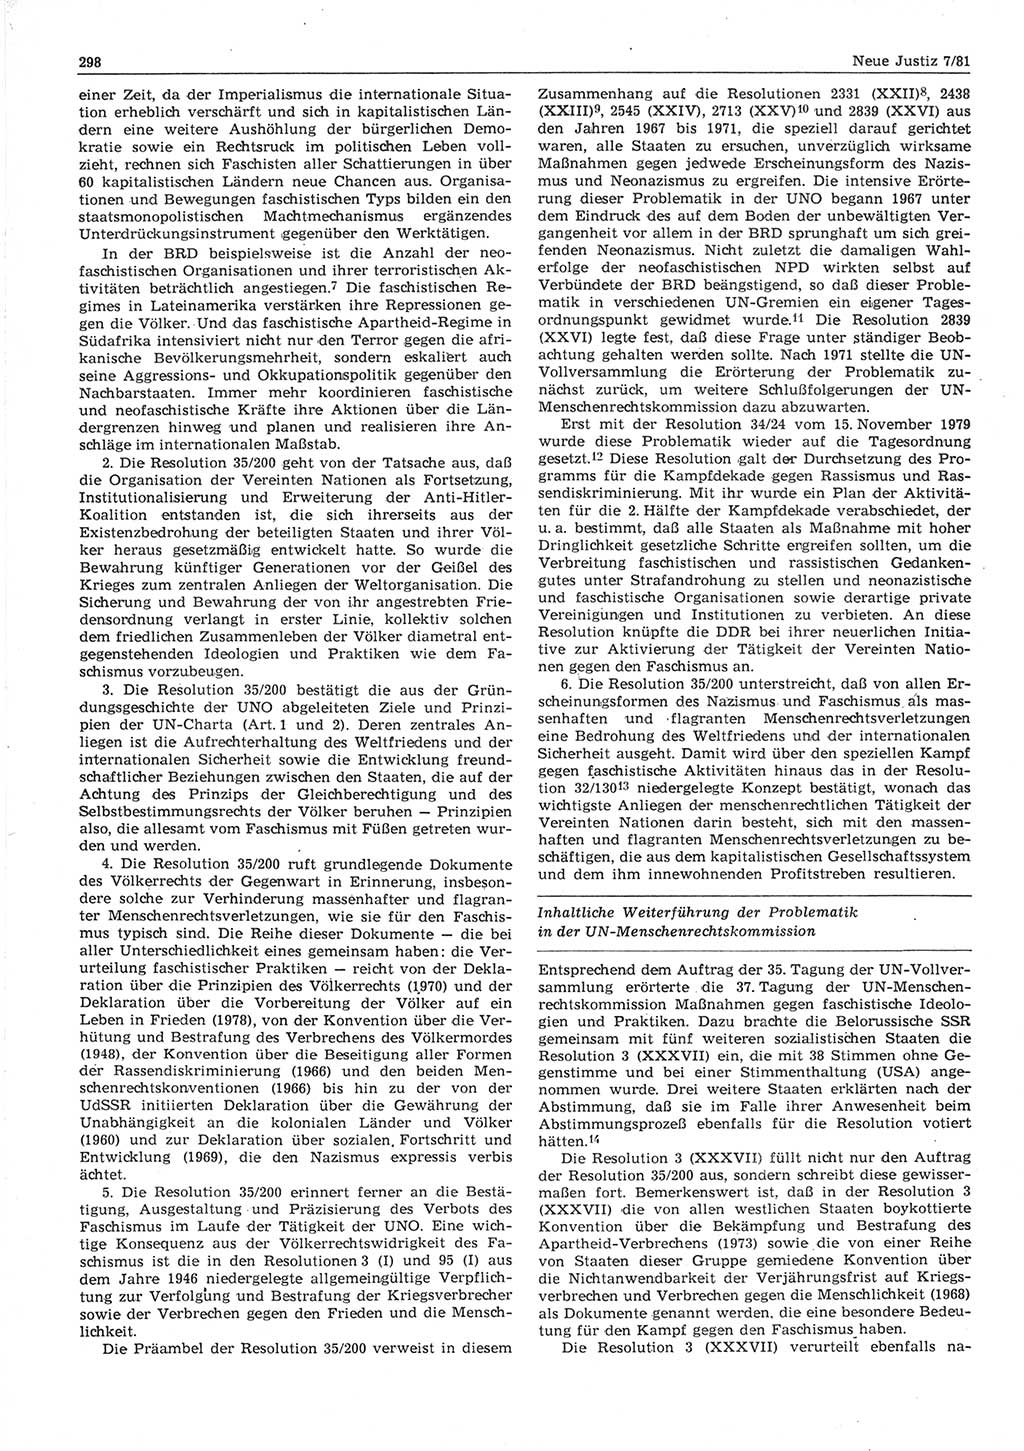 Neue Justiz (NJ), Zeitschrift für sozialistisches Recht und Gesetzlichkeit [Deutsche Demokratische Republik (DDR)], 35. Jahrgang 1981, Seite 298 (NJ DDR 1981, S. 298)